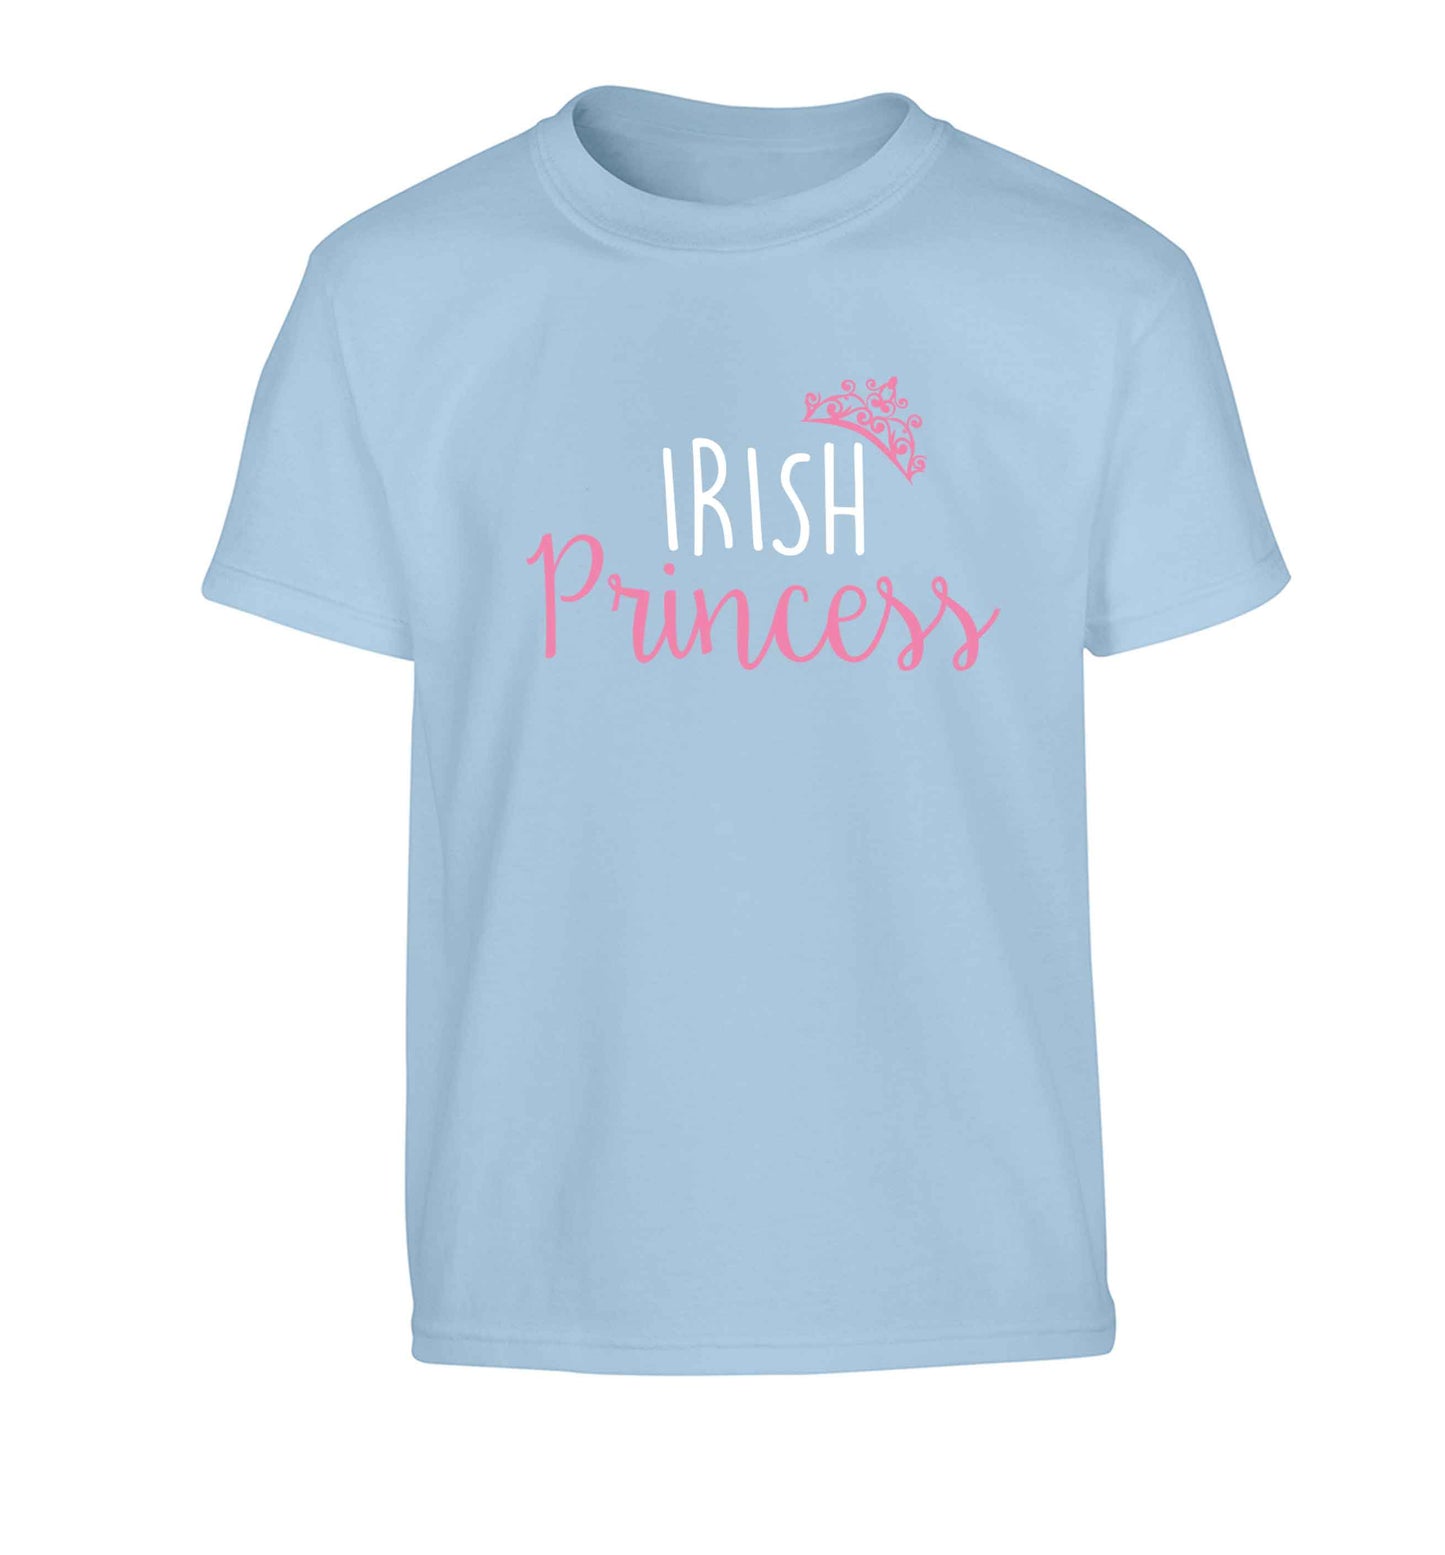 Irish princess Children's light blue Tshirt 12-13 Years